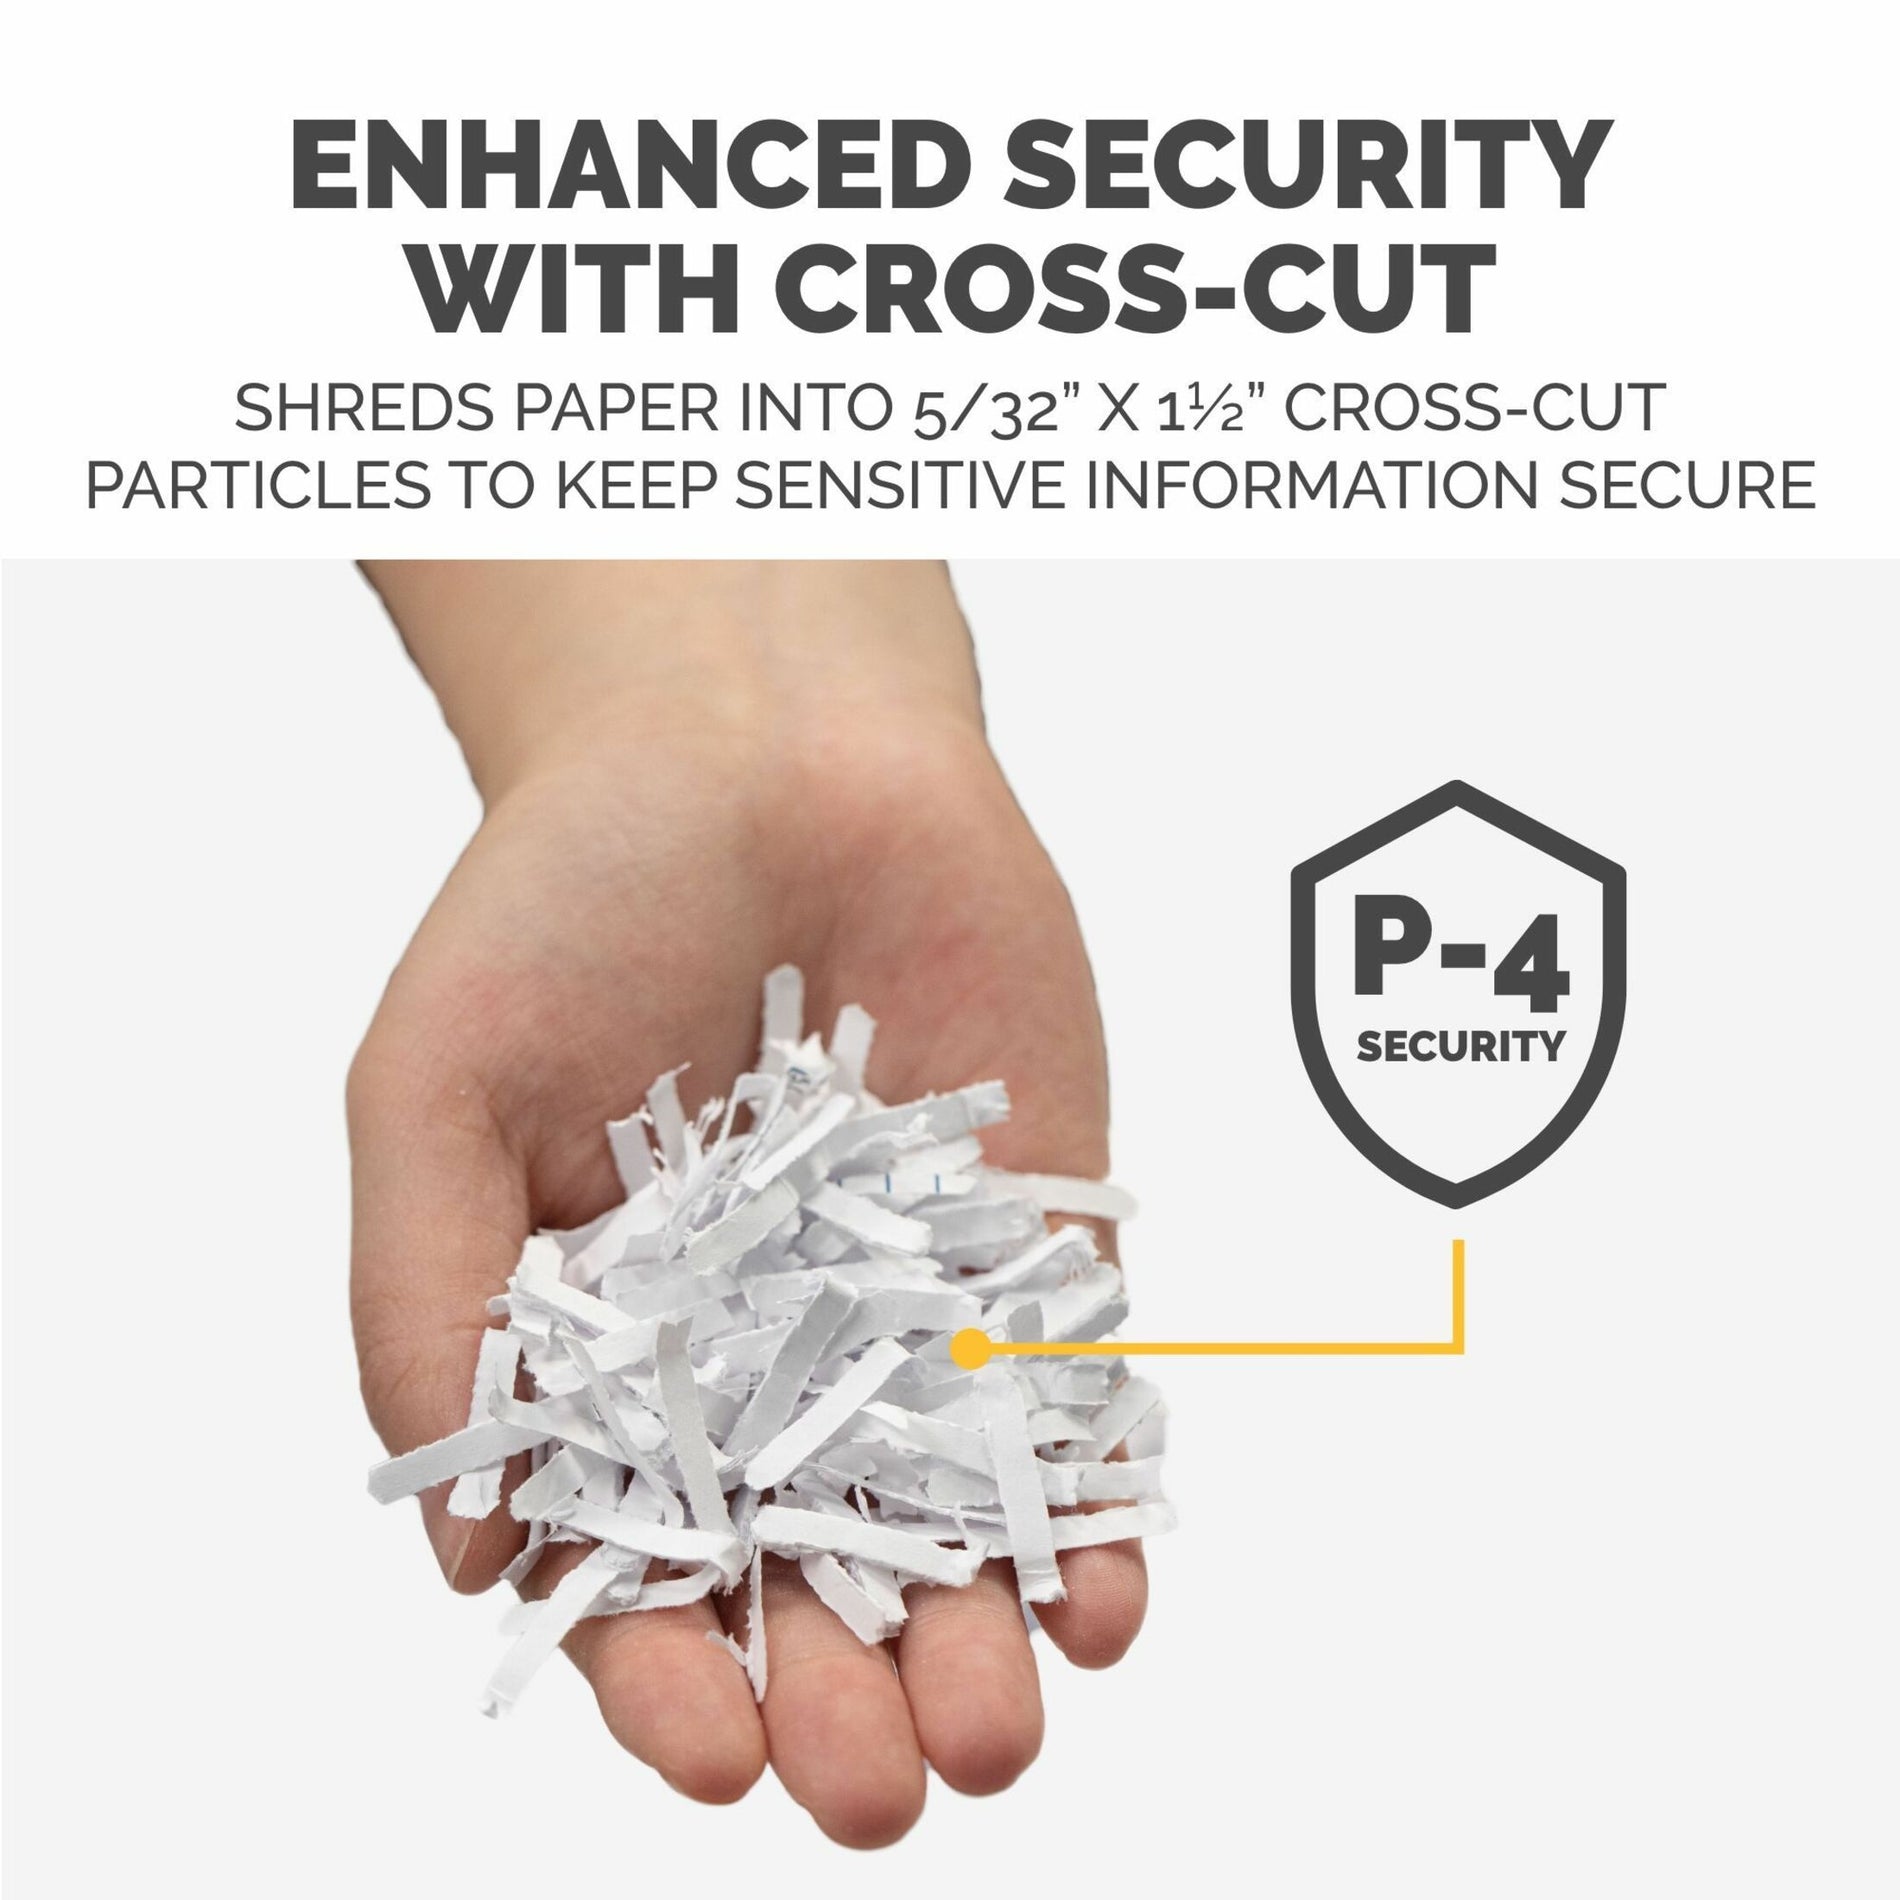 Fellowes 4680001 AutoMax 150C Hands Free Paper Shredder, 8-Sheet Capacity, Cross-Cut, SilentShred, 5-Year Warranty